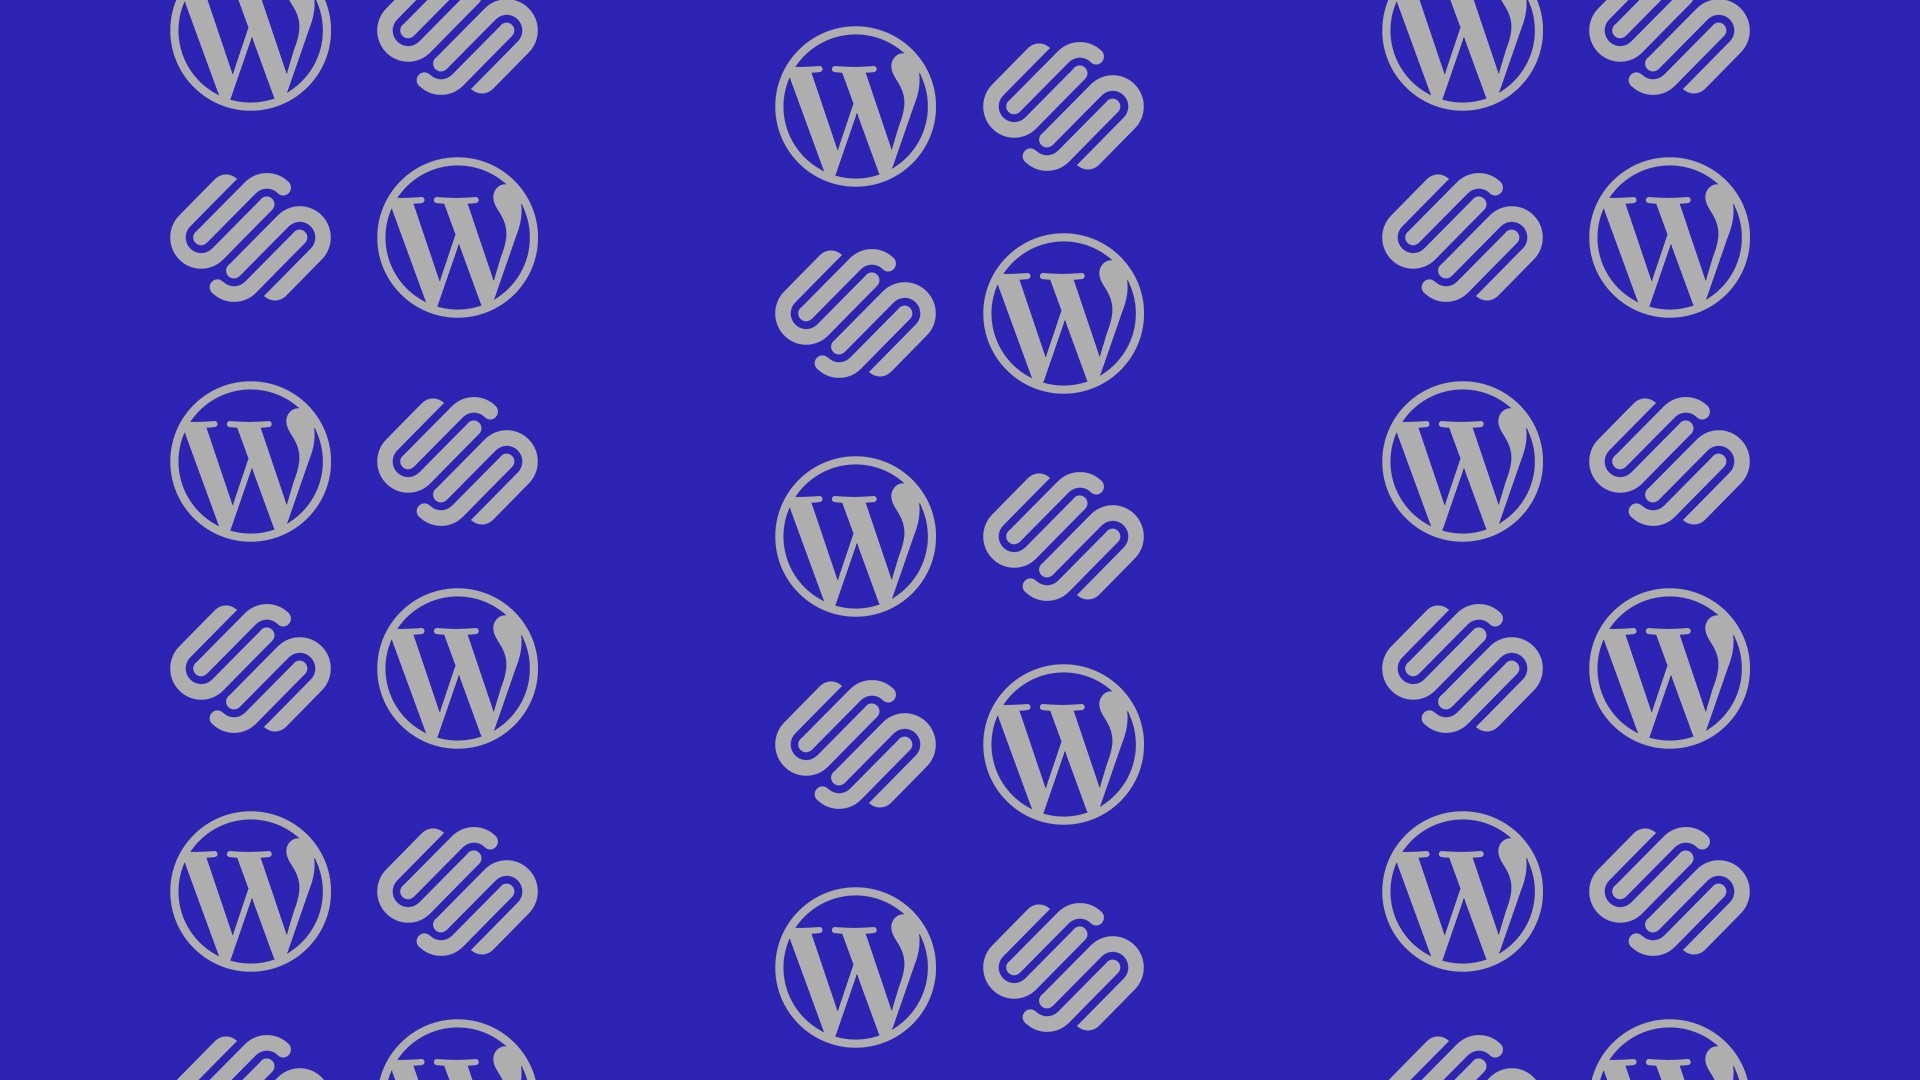 Squarespace vs WordPress blog post by WLA